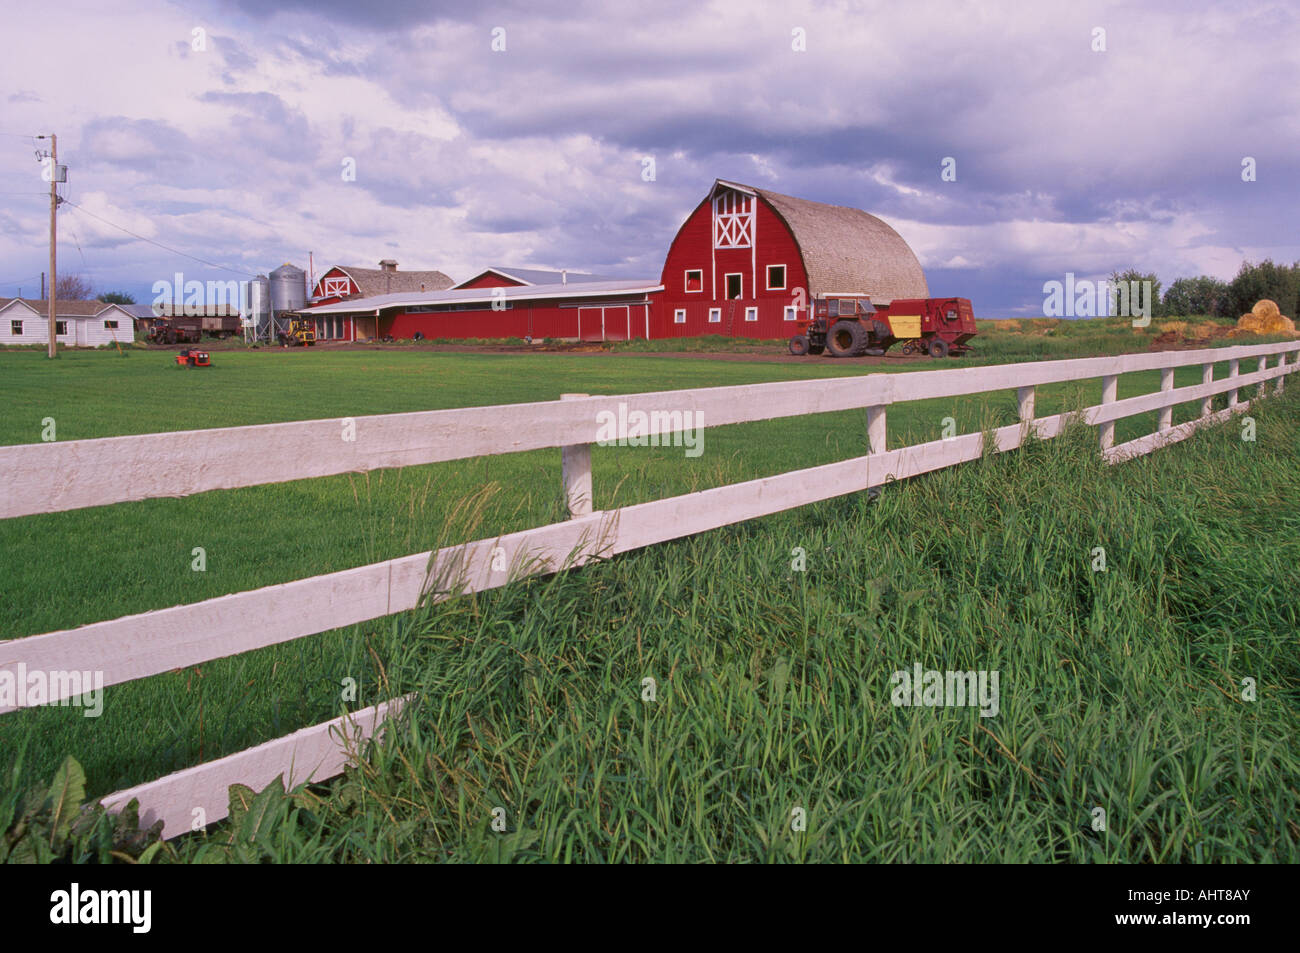 Une grange rouge et blanc clôture sur une ferme près de Dawson Creek dans le 'Pays' Peace River of Northern British Columbia Canada Banque D'Images